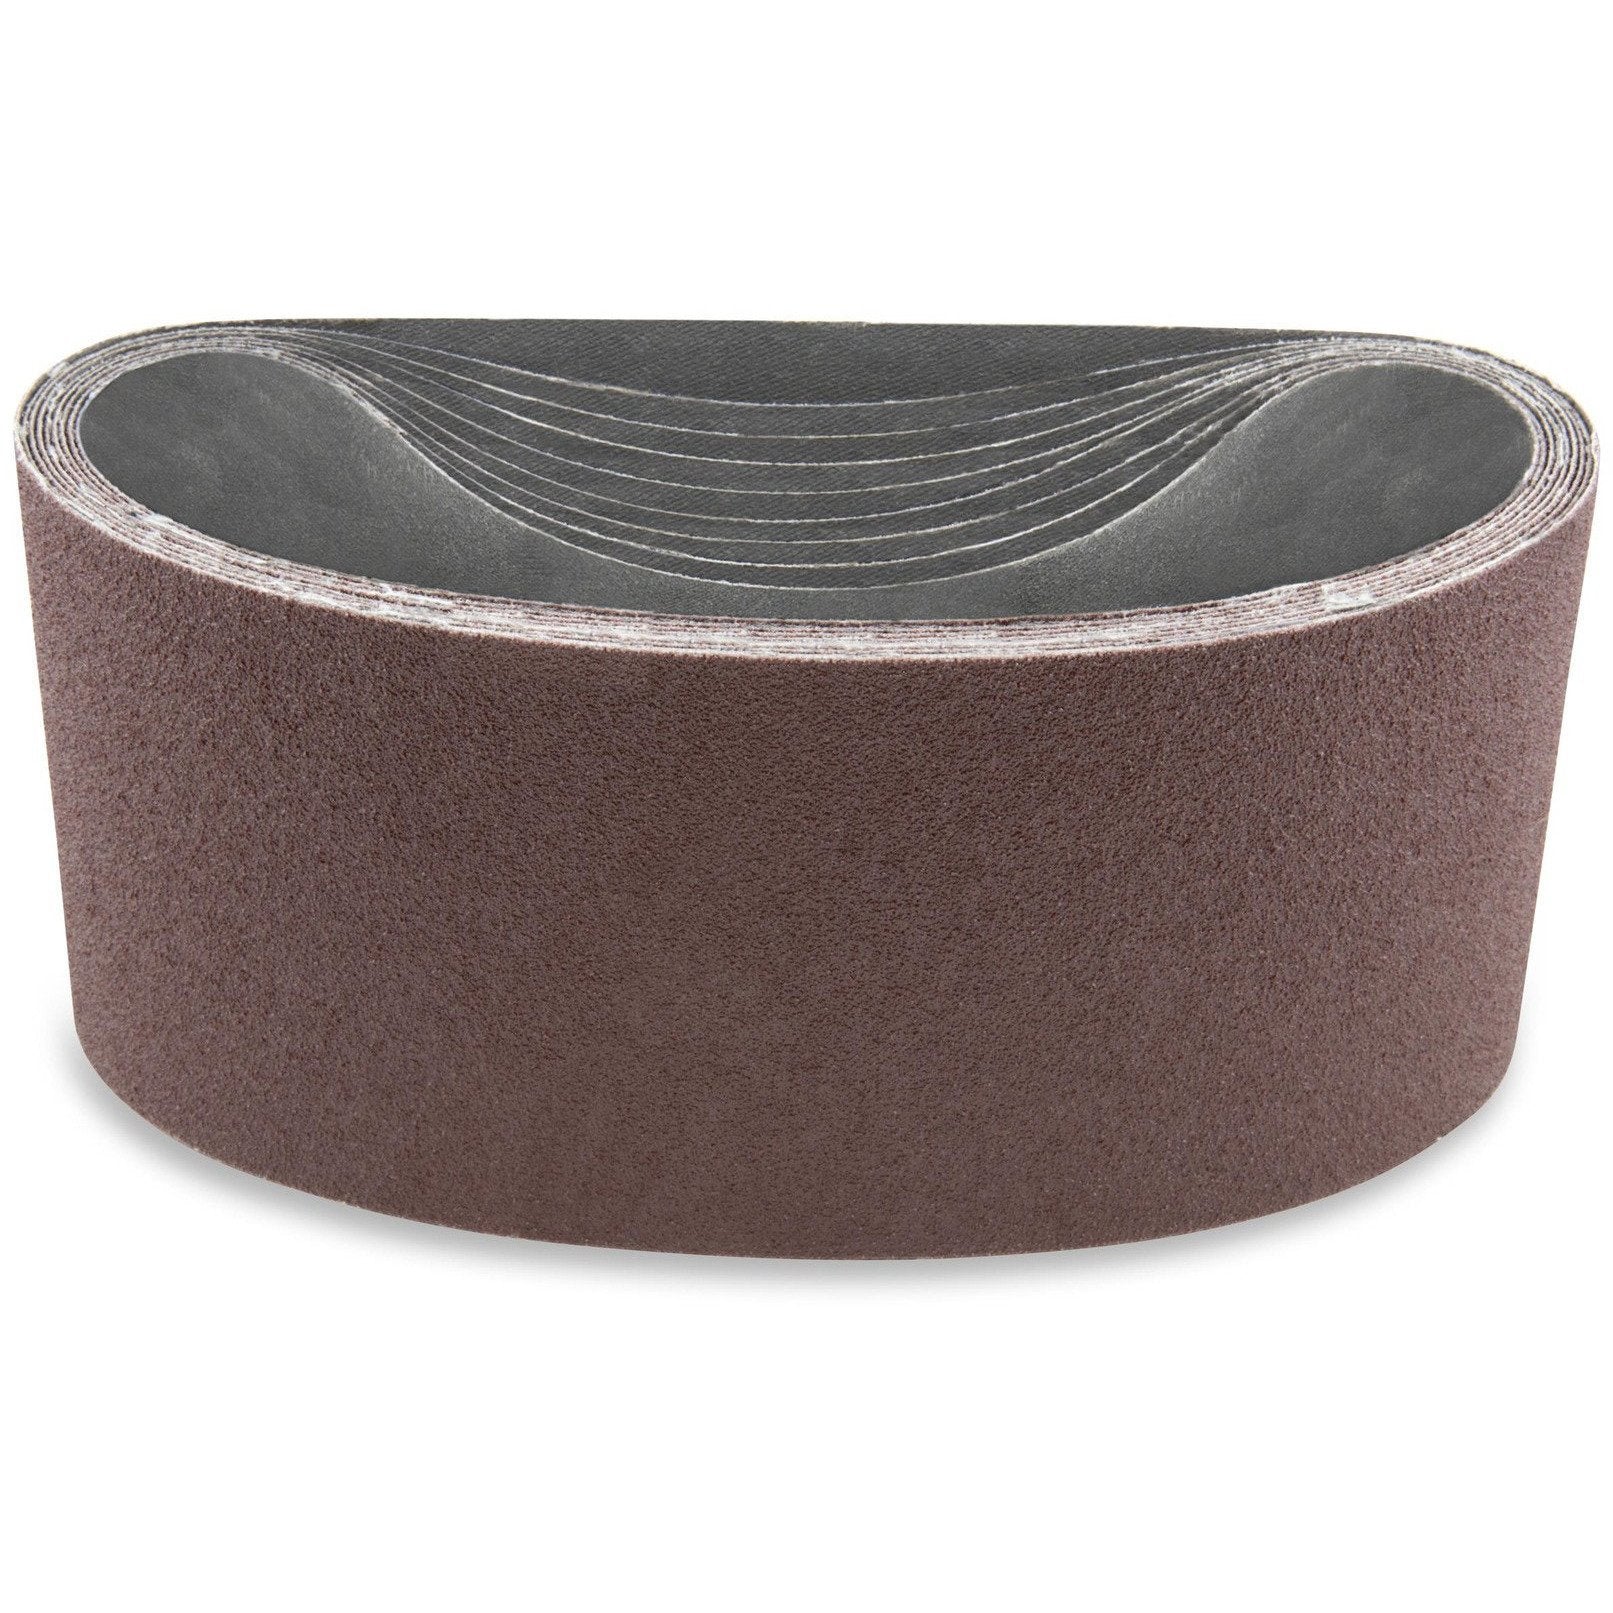 3 X 132 Inch Aluminum Oxide Sanding Belts, 4 Pack - Red Label Abrasives